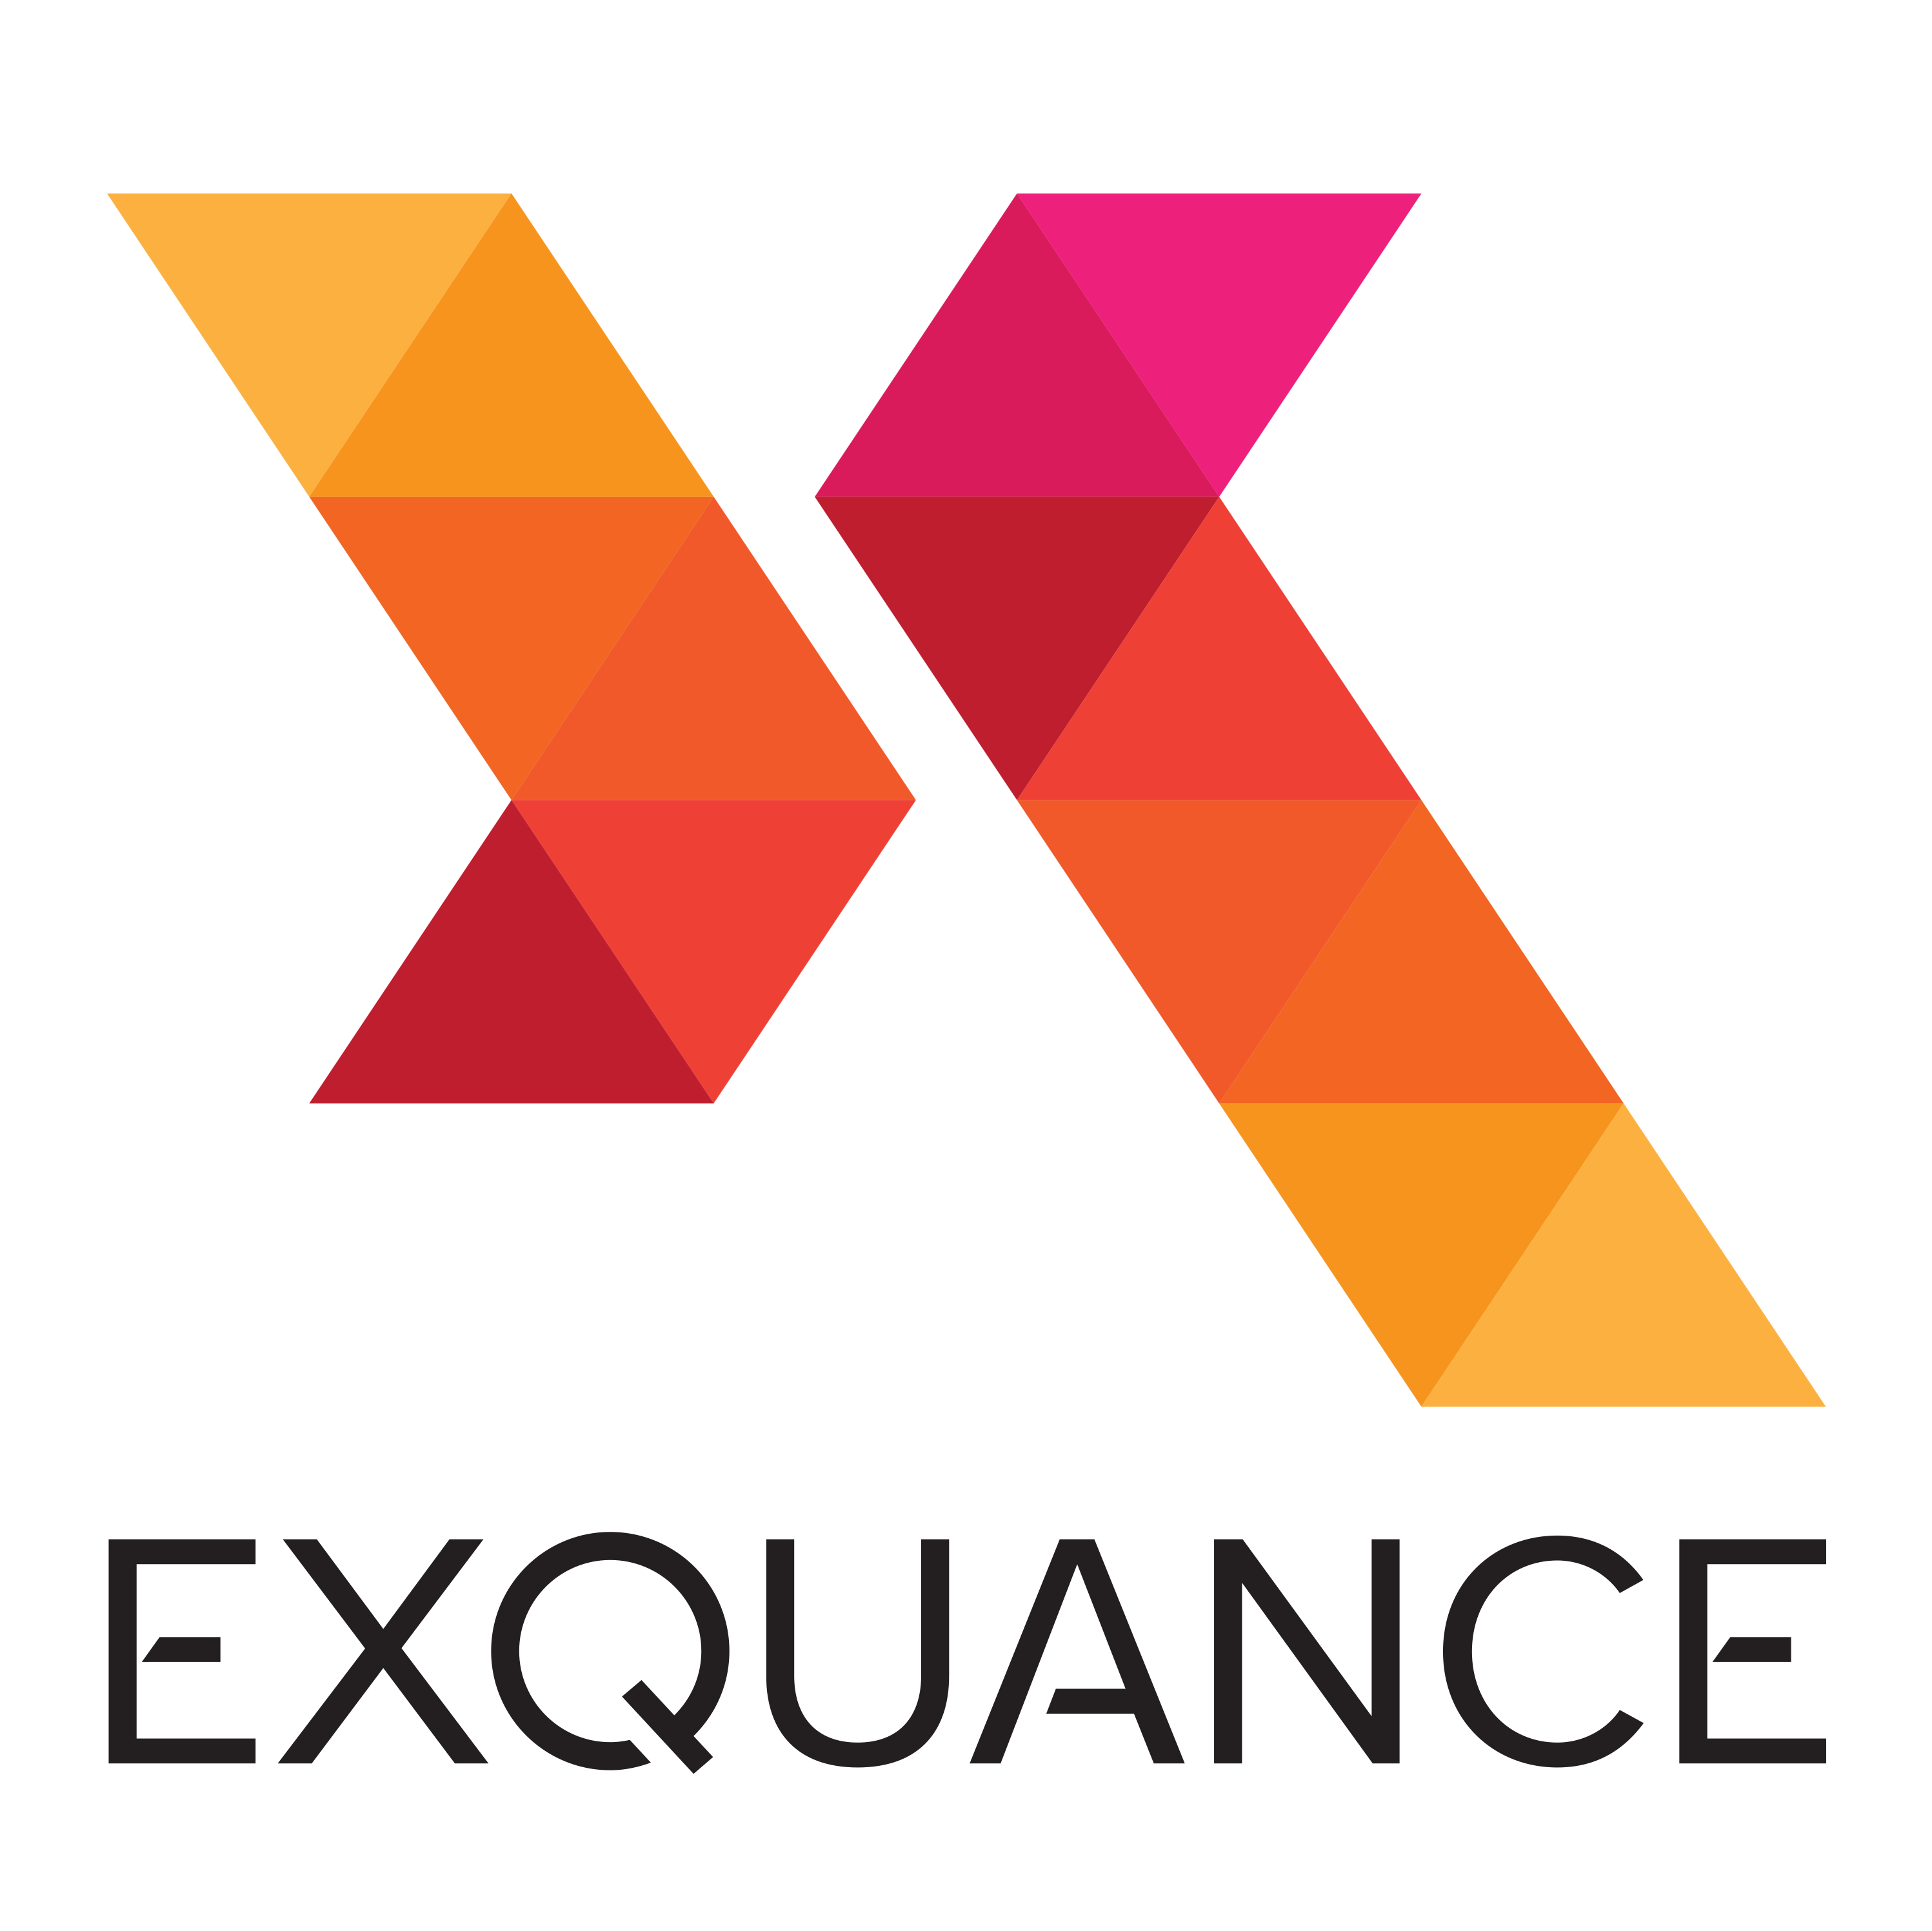 Exquance Logo Square 600 dpi